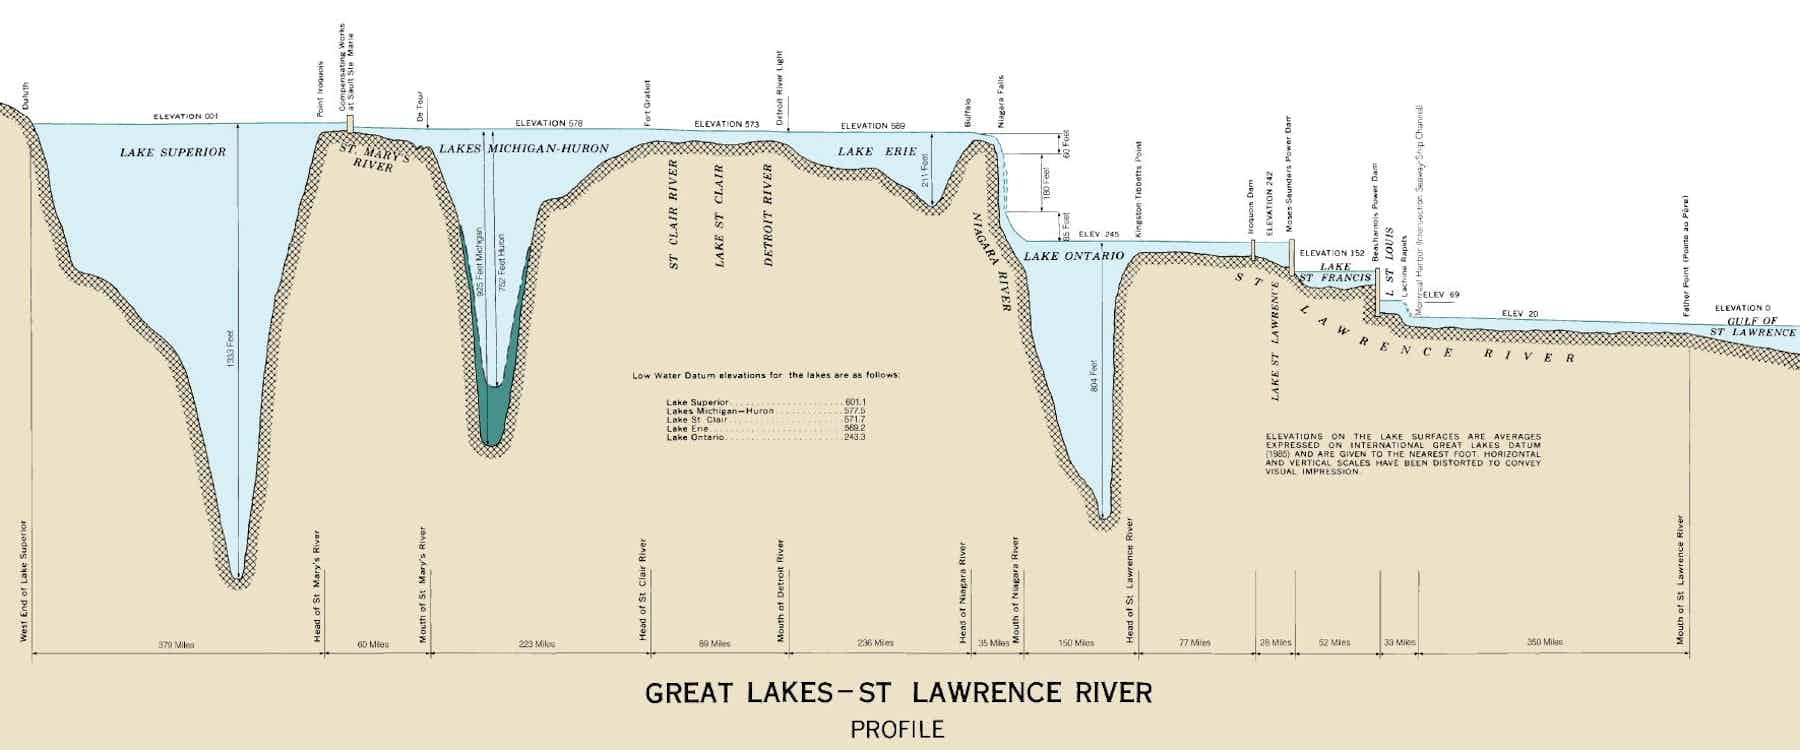 Озеро Мичиган глубина. Райявр озеро. Great Lakes. Шкала глубин озера Гурон. Максимальная глубина озера виштинец